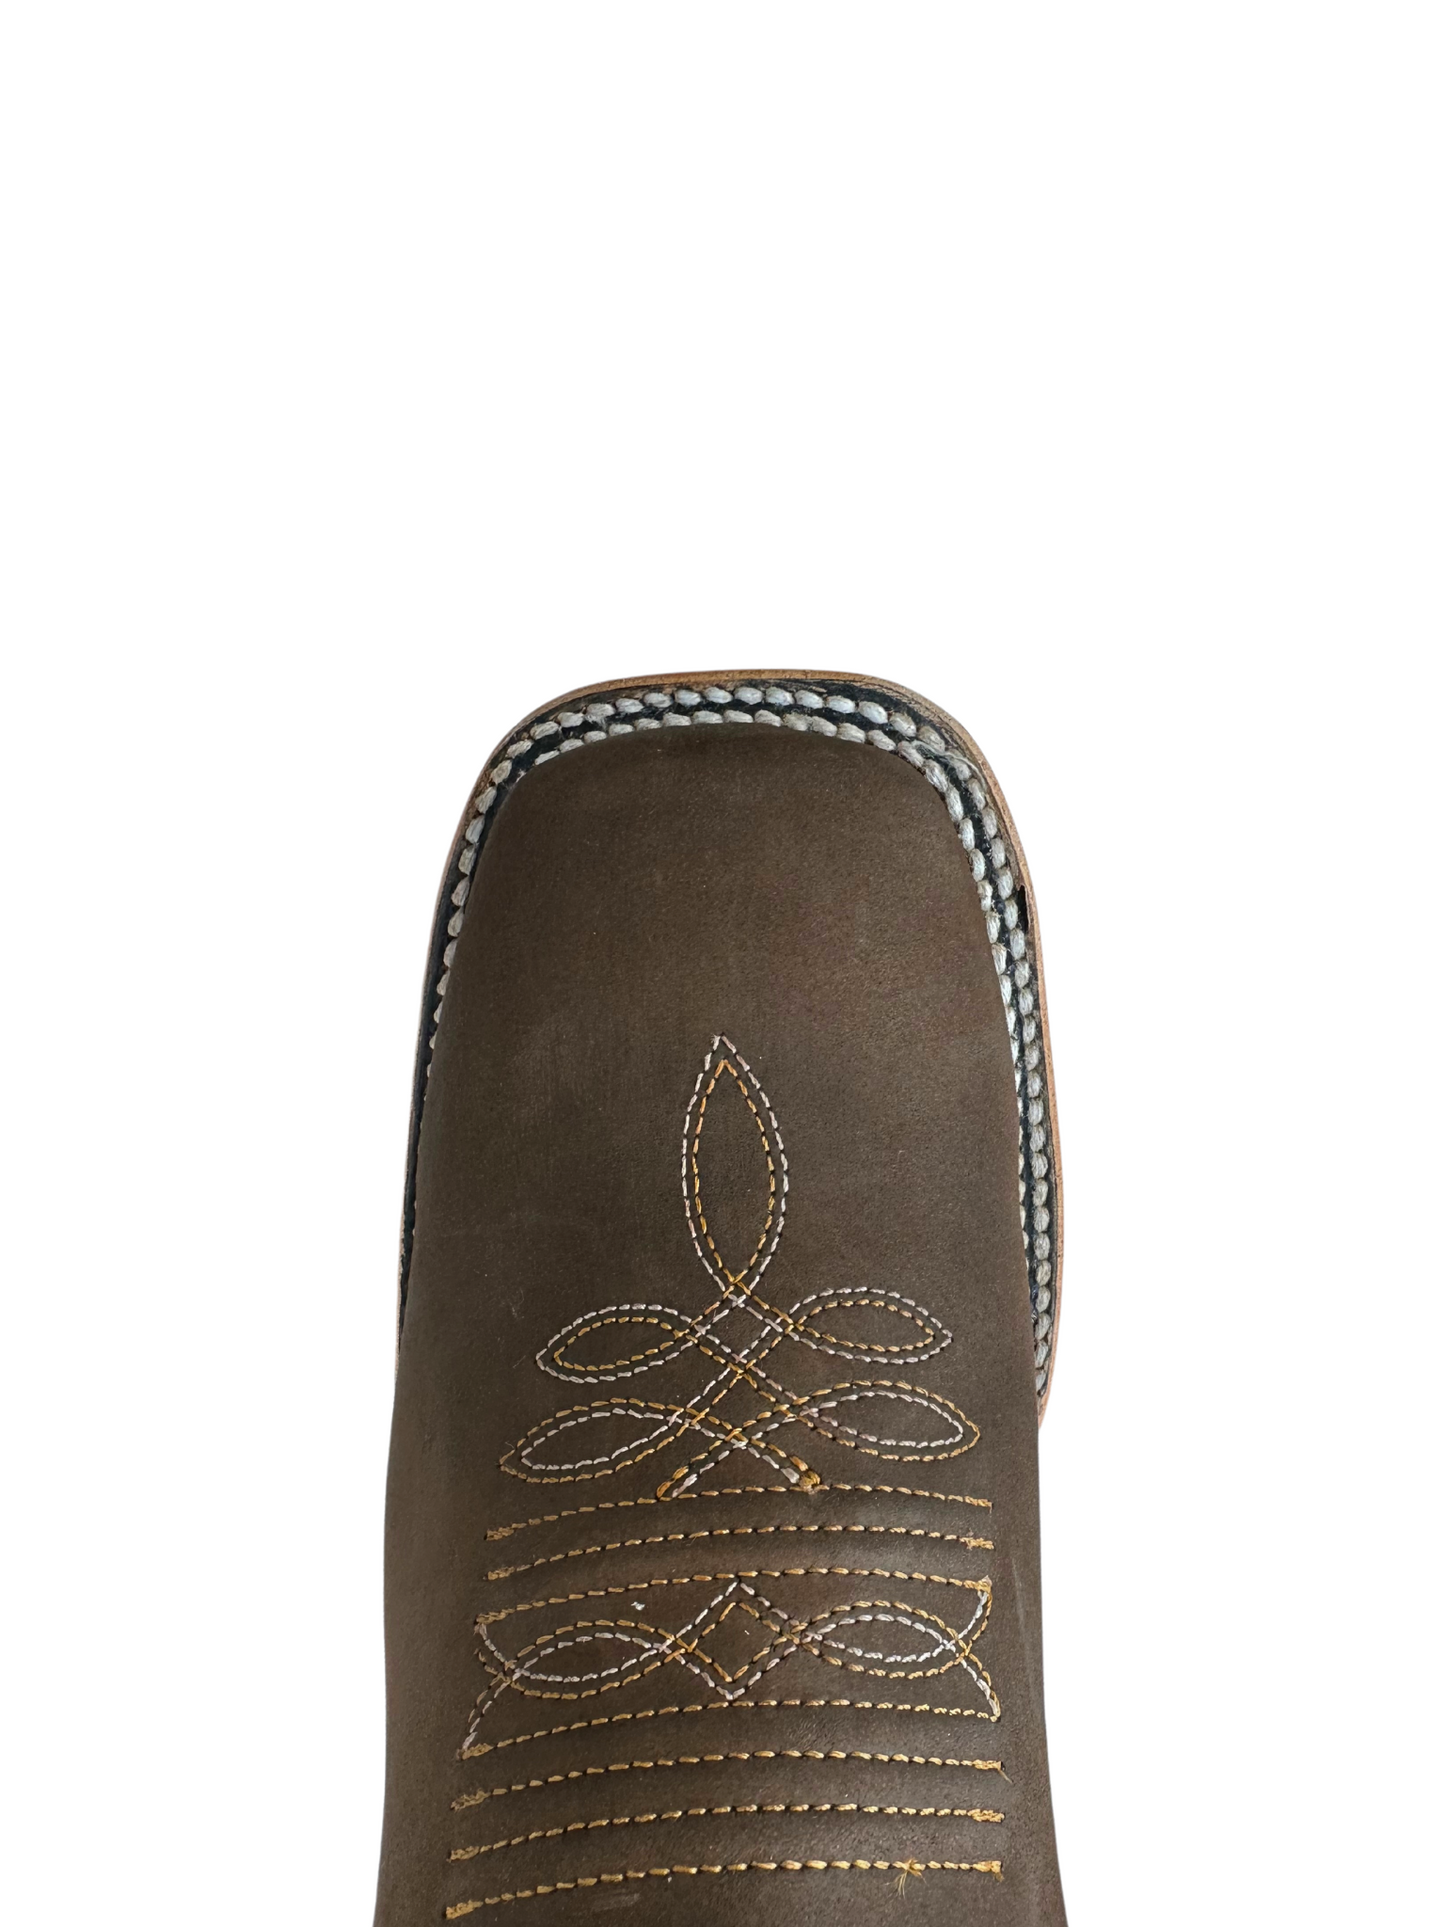 Quincy Men's Brown Nobuck Leather Short Boot